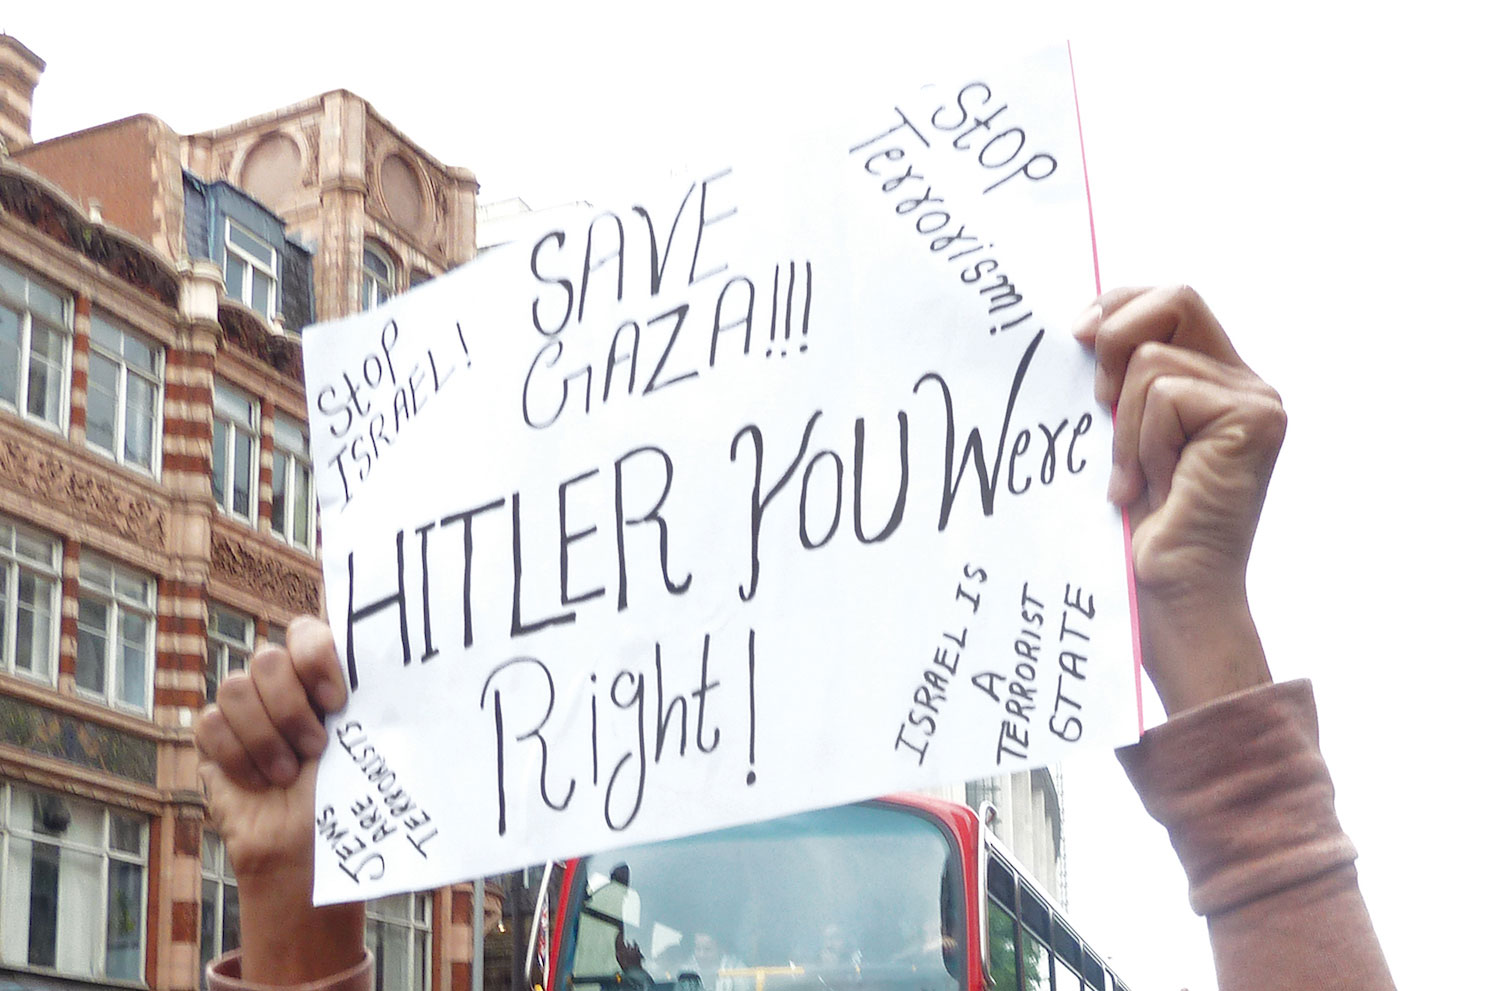 Antisemitiskt plakat från demonstration. Det står bland annat "Hitler you were right"